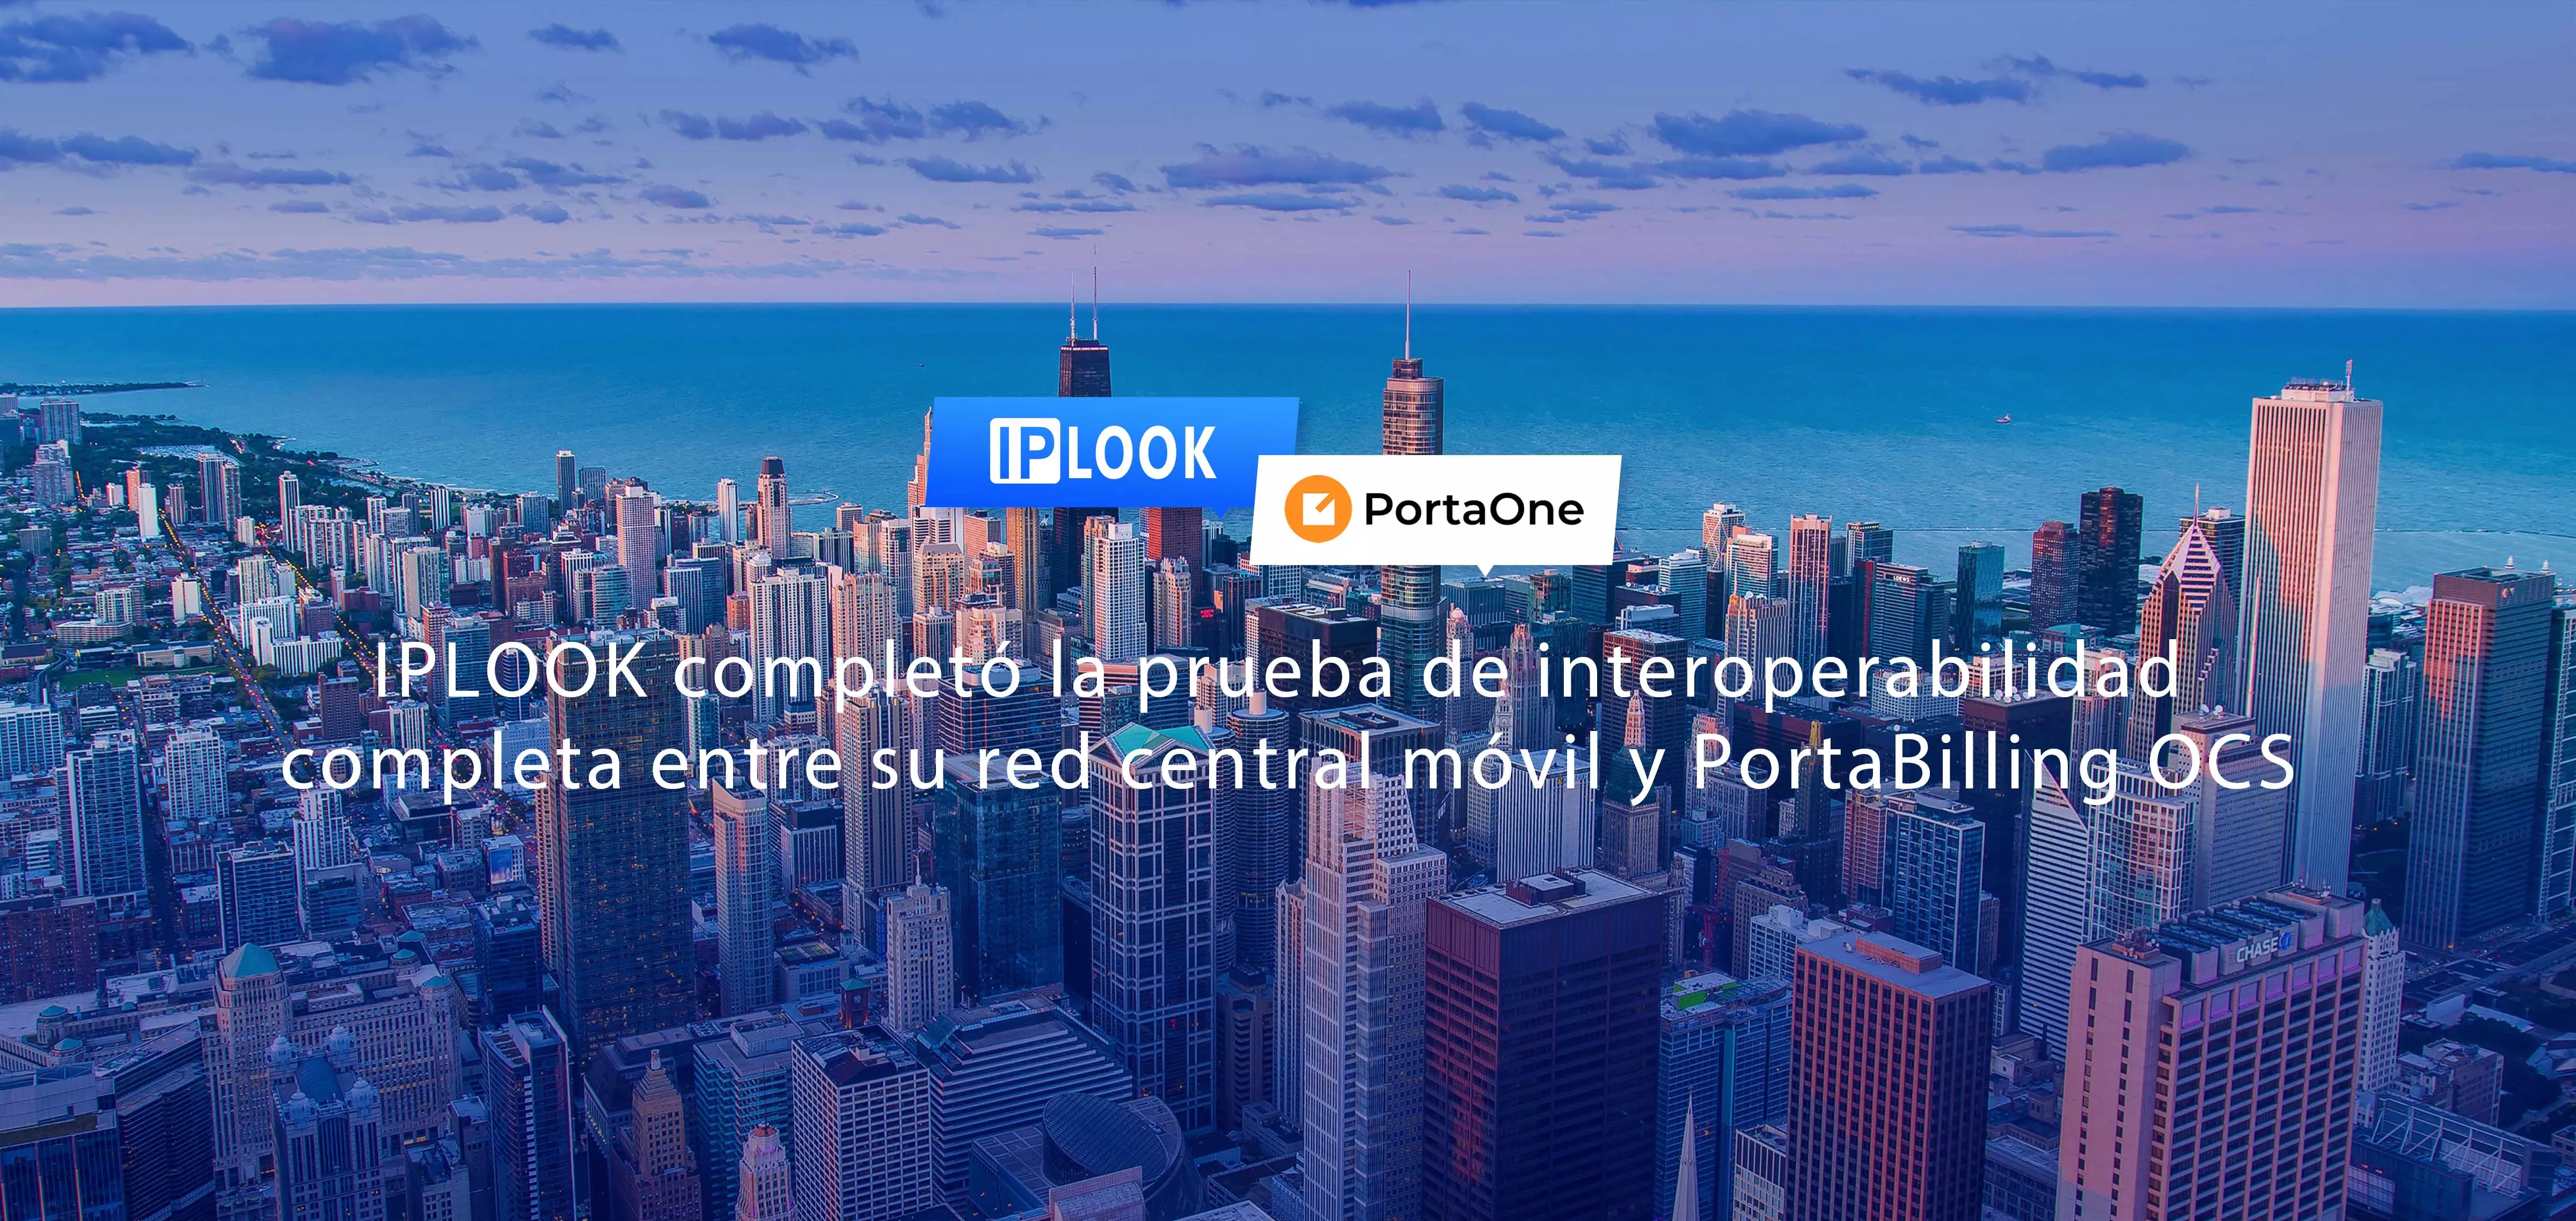 IPLOOK completó la prueba de interoperabilidad completa entre su red central móvil y PortaBilling OCS